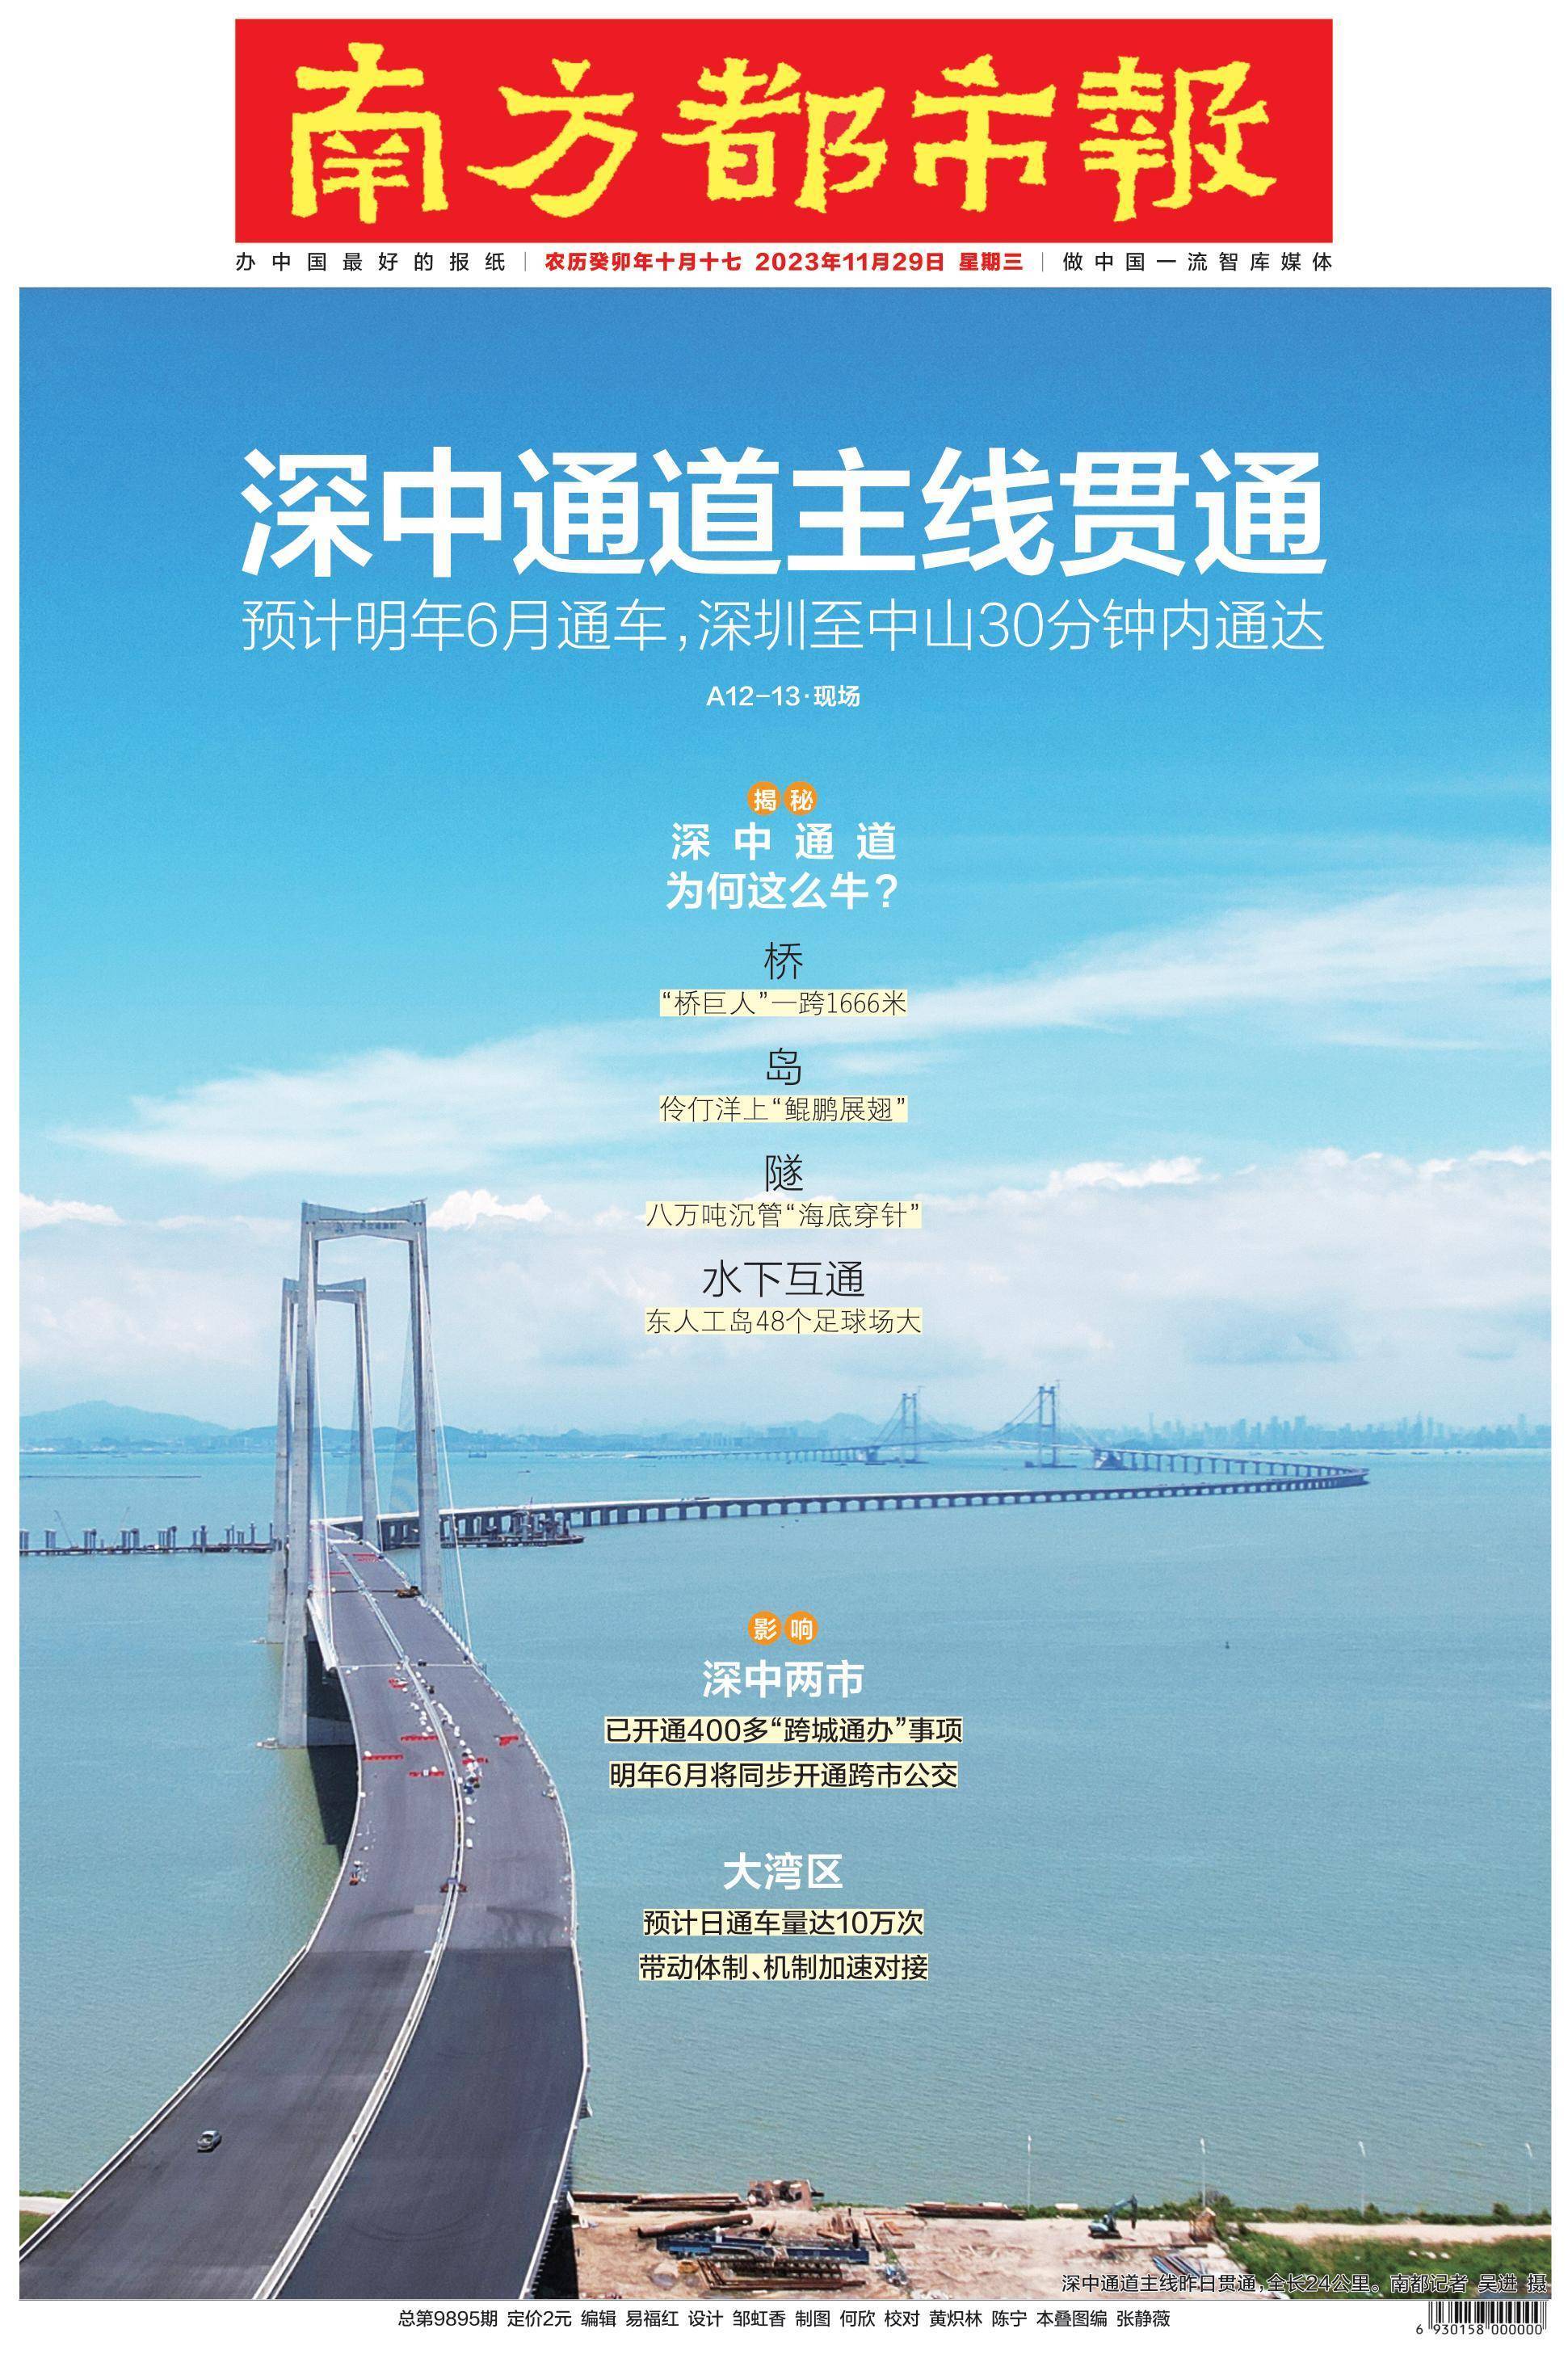 11月28日,广东交通集团发布消息,国家重大工程深中通道主线贯通